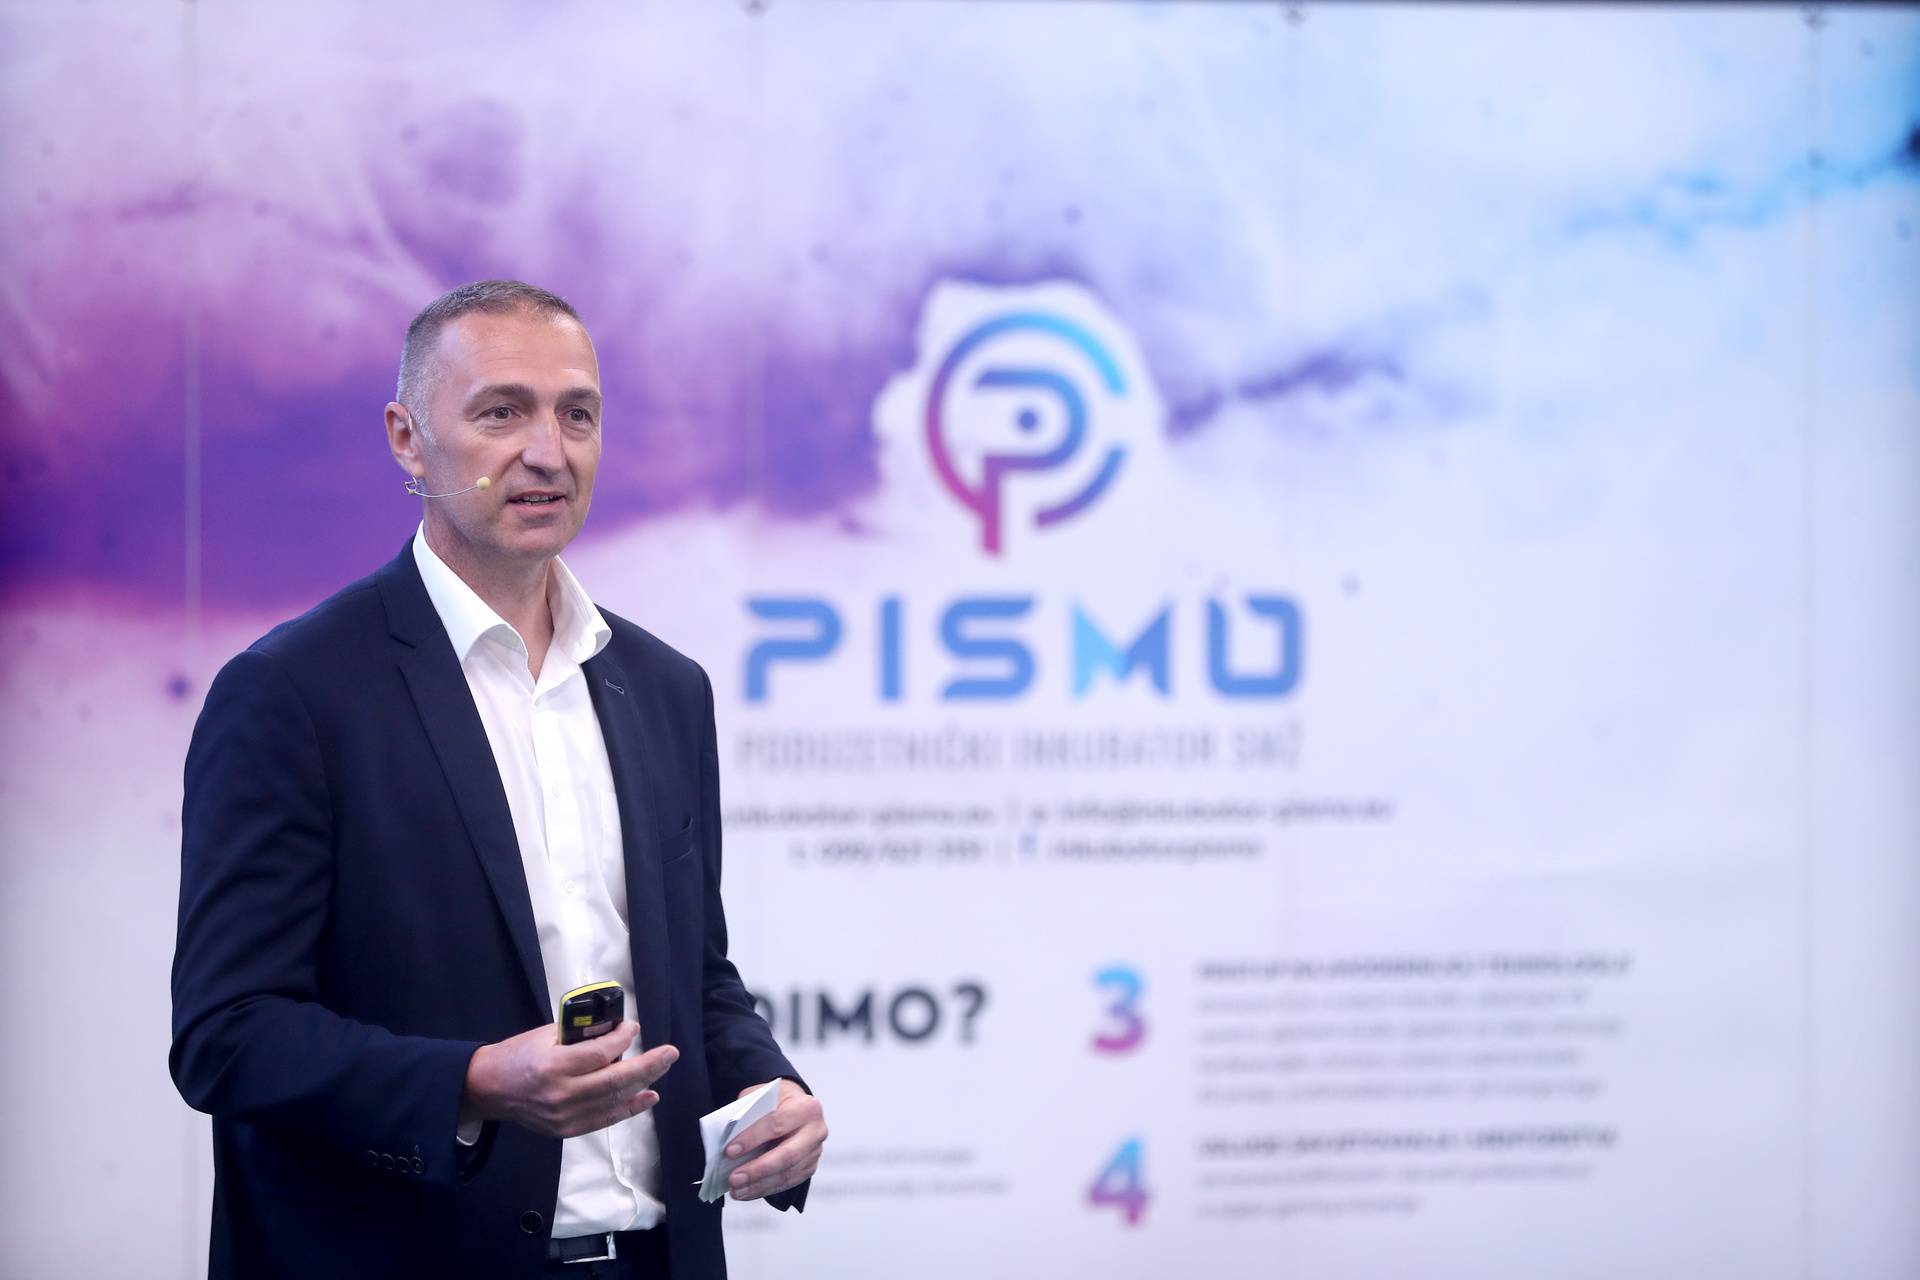 'Novska može postati centar gaming industrije': A1 osigurao gigabitnu optičku mrežu Simori